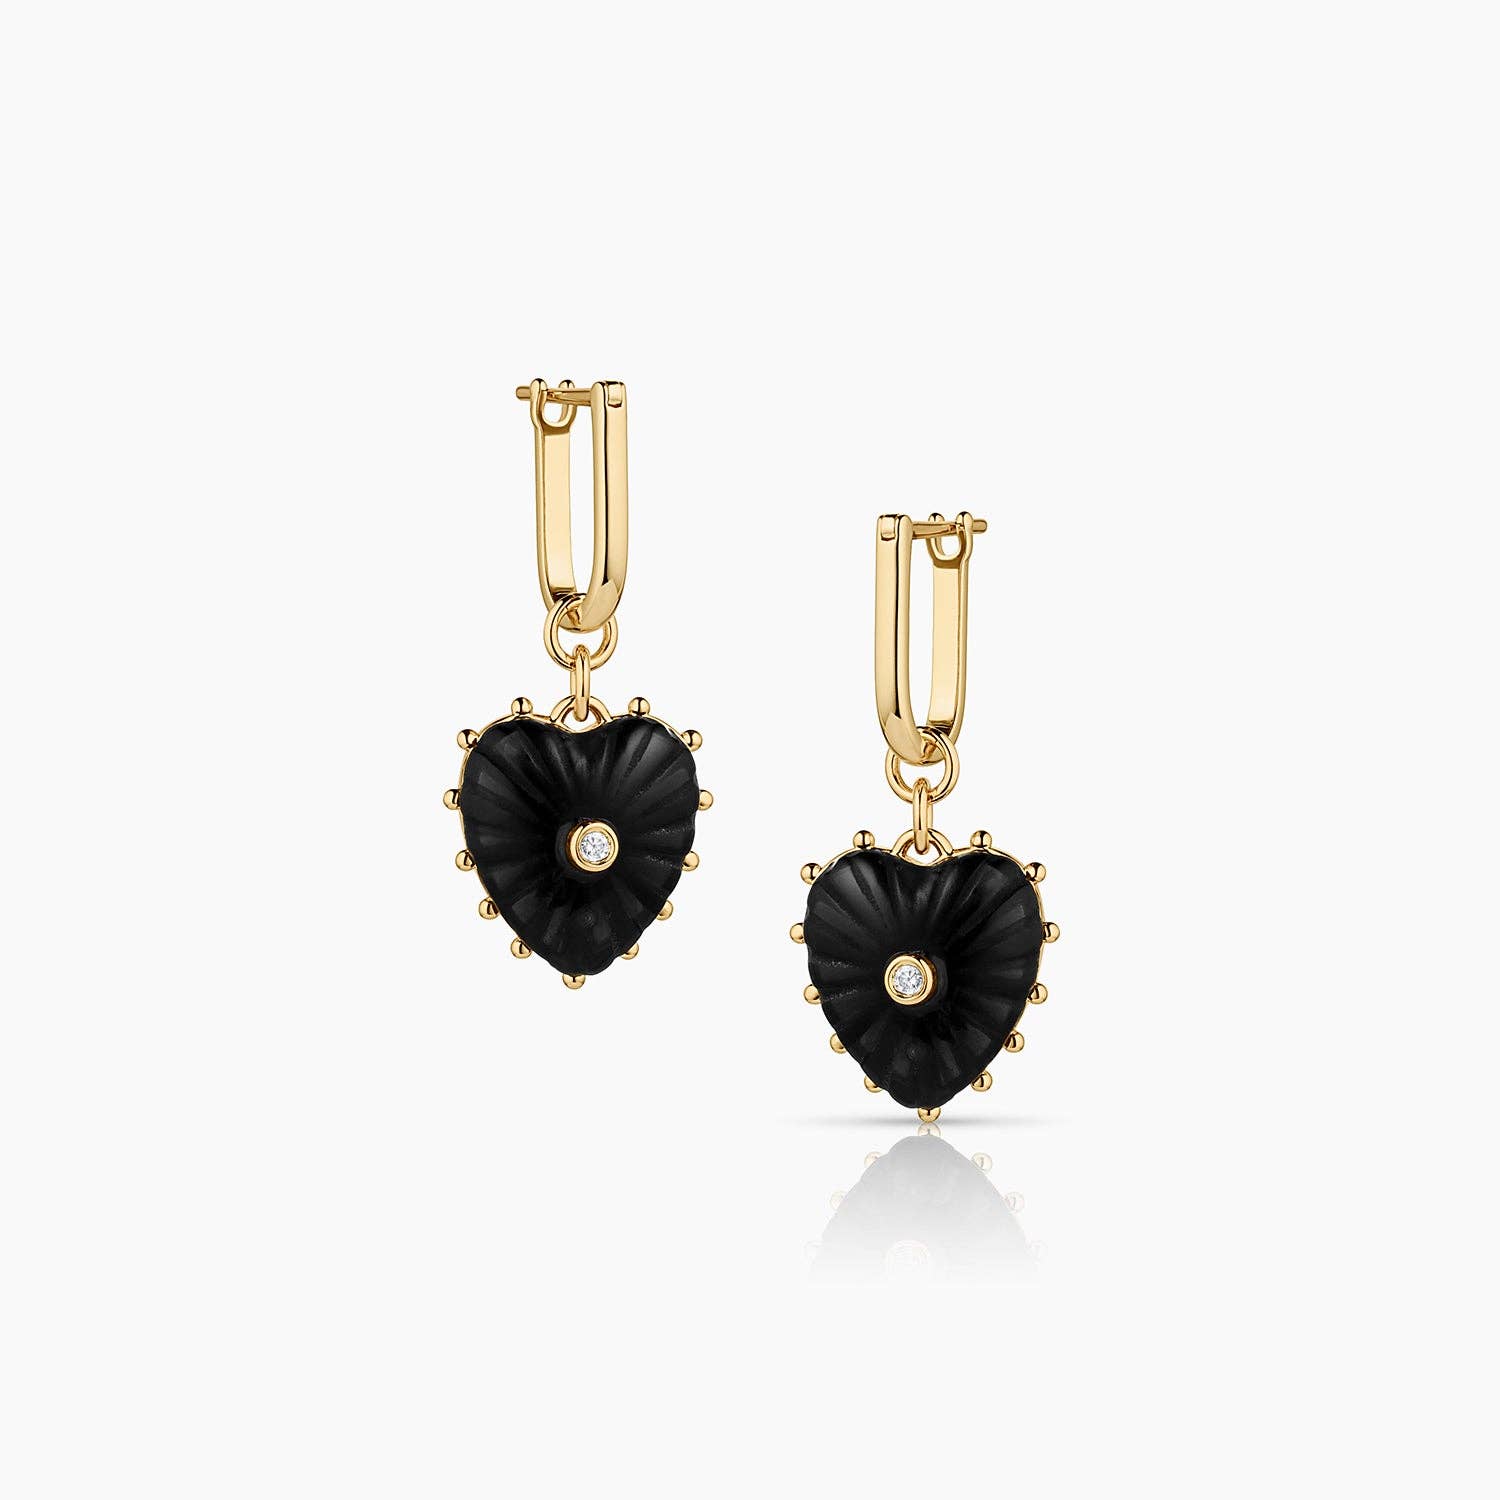 Isabel Onyx Heart Earrings - Abigail Fox Designs